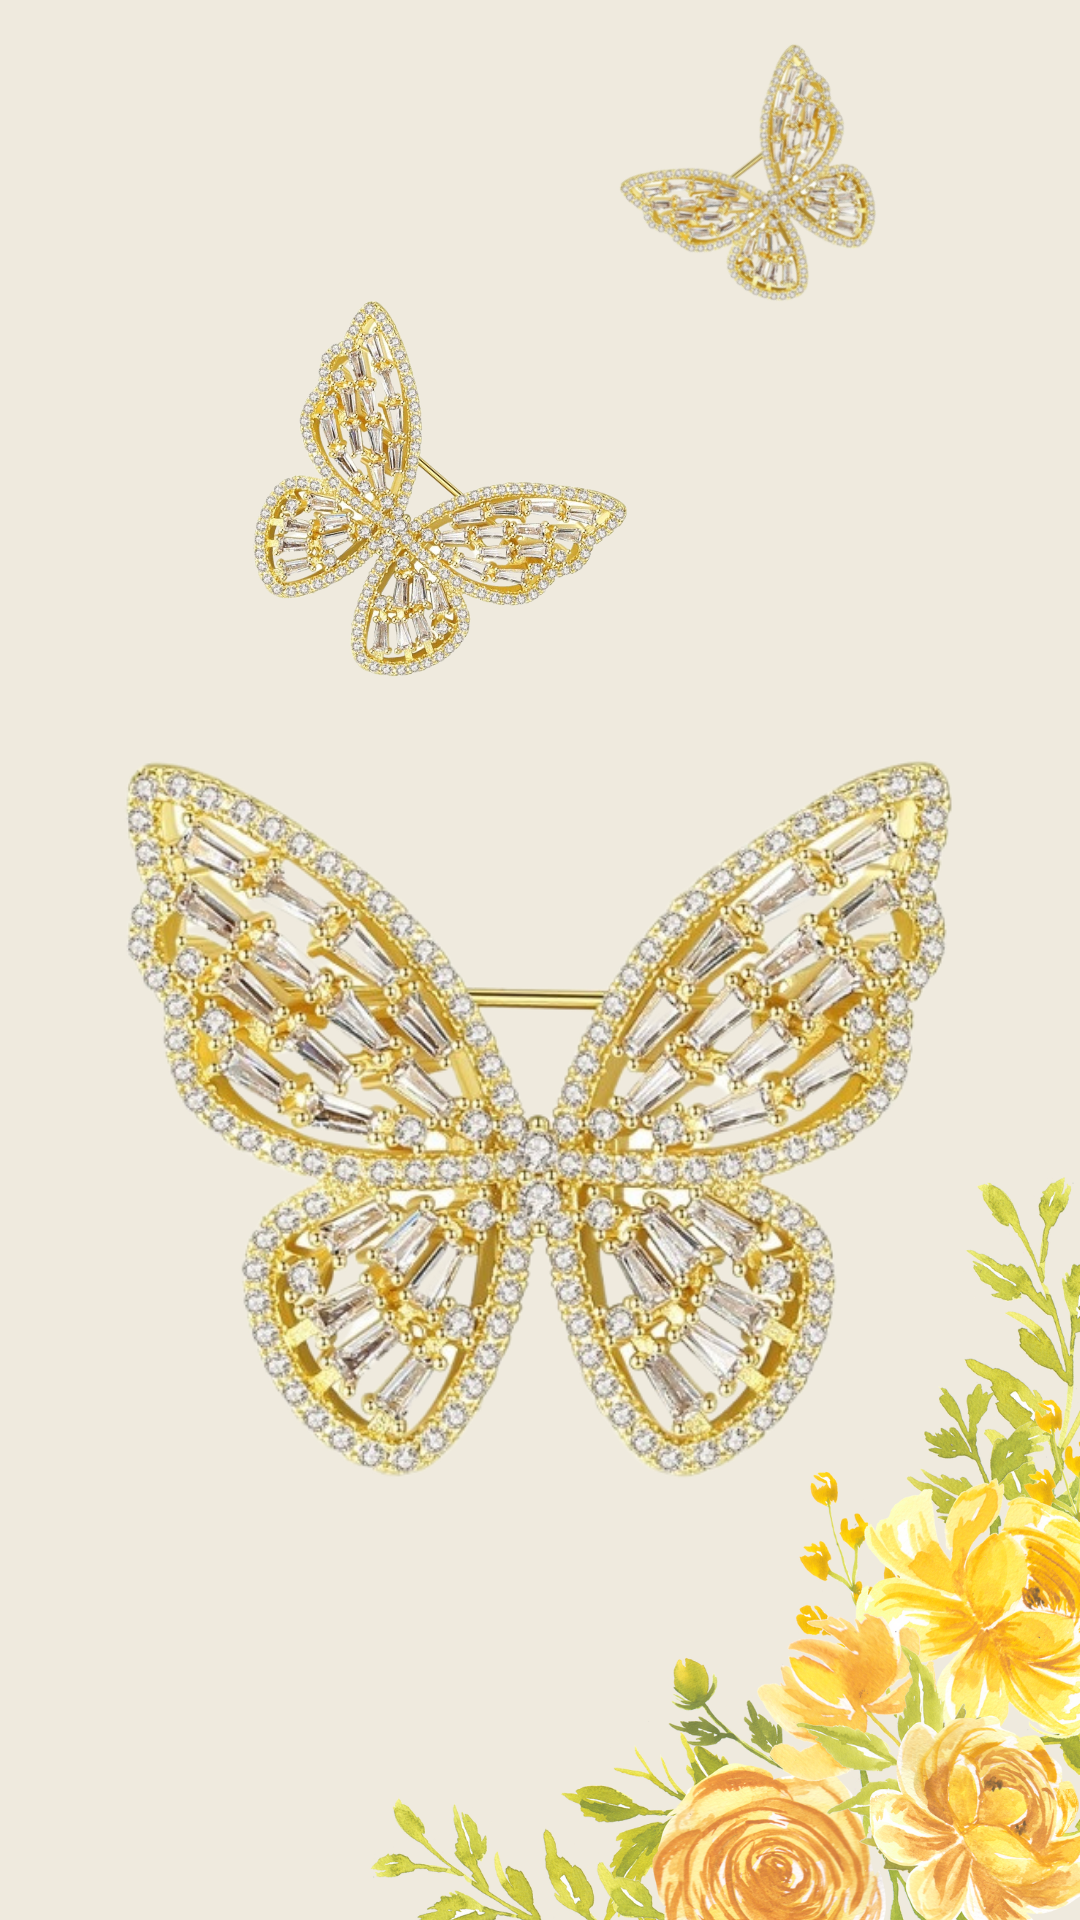 Cài Áo Bạc S925 Nữ Trâm Cài Áo Butterfly Đá Vàng Cz Cao Cấp